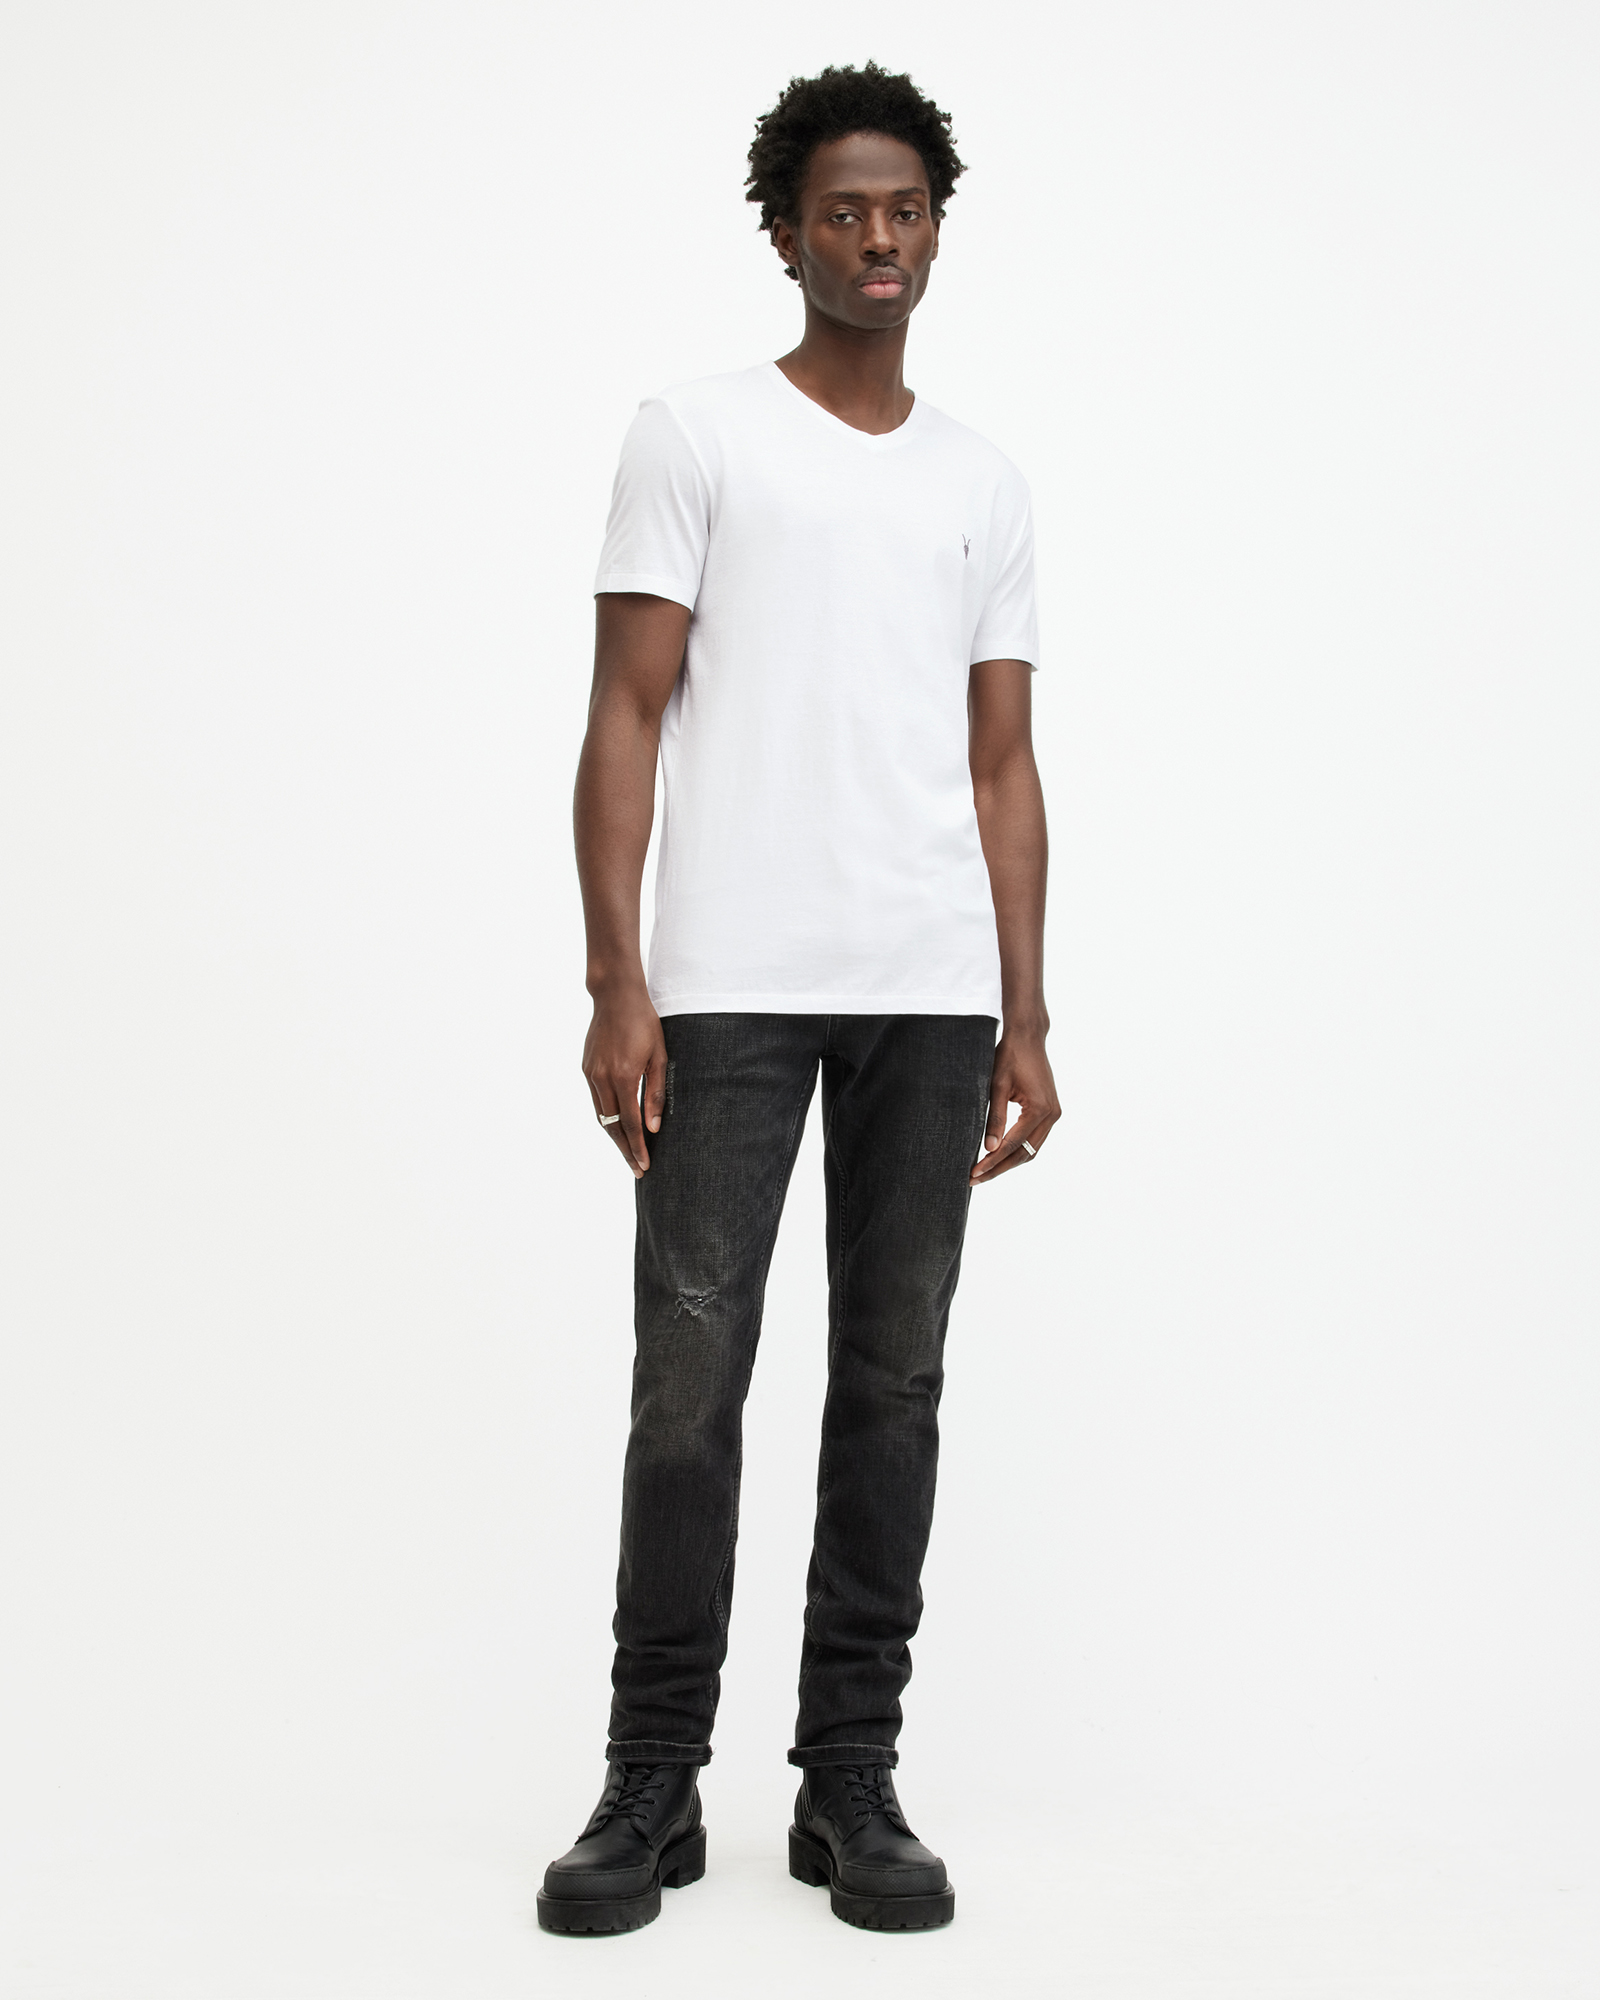 AllSaints Tonic V-Neck Slim Fit Ramskull T-Shirt,, Optic White